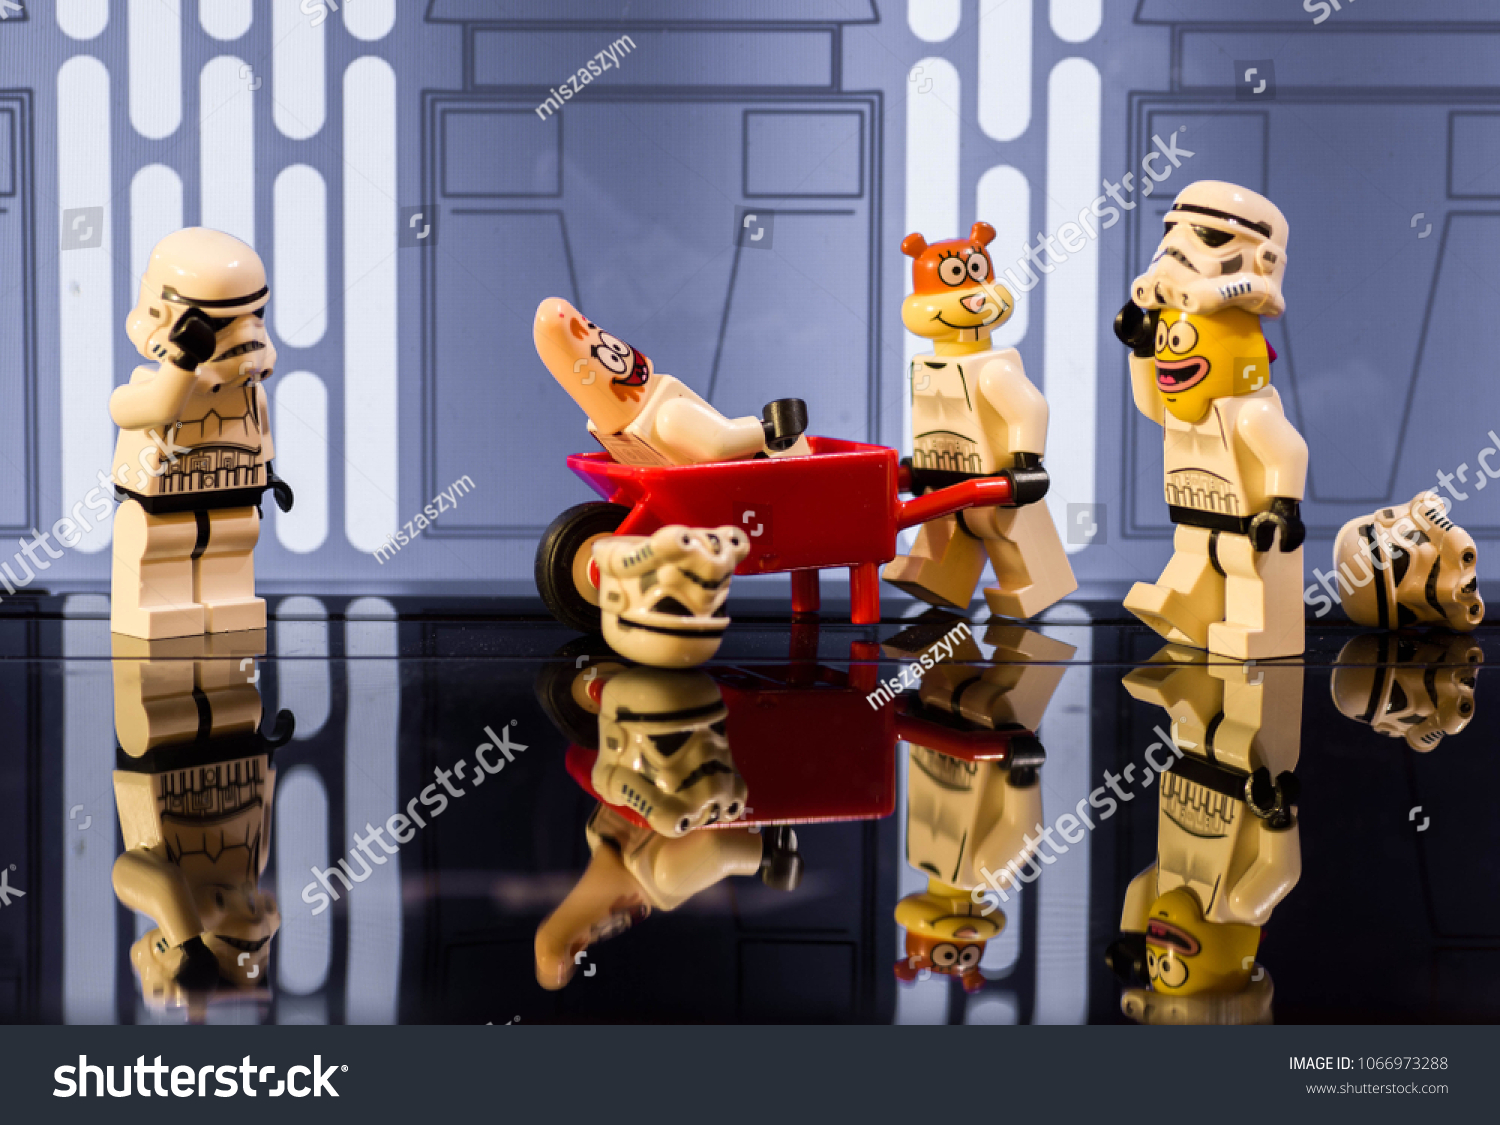 fun lego star wars